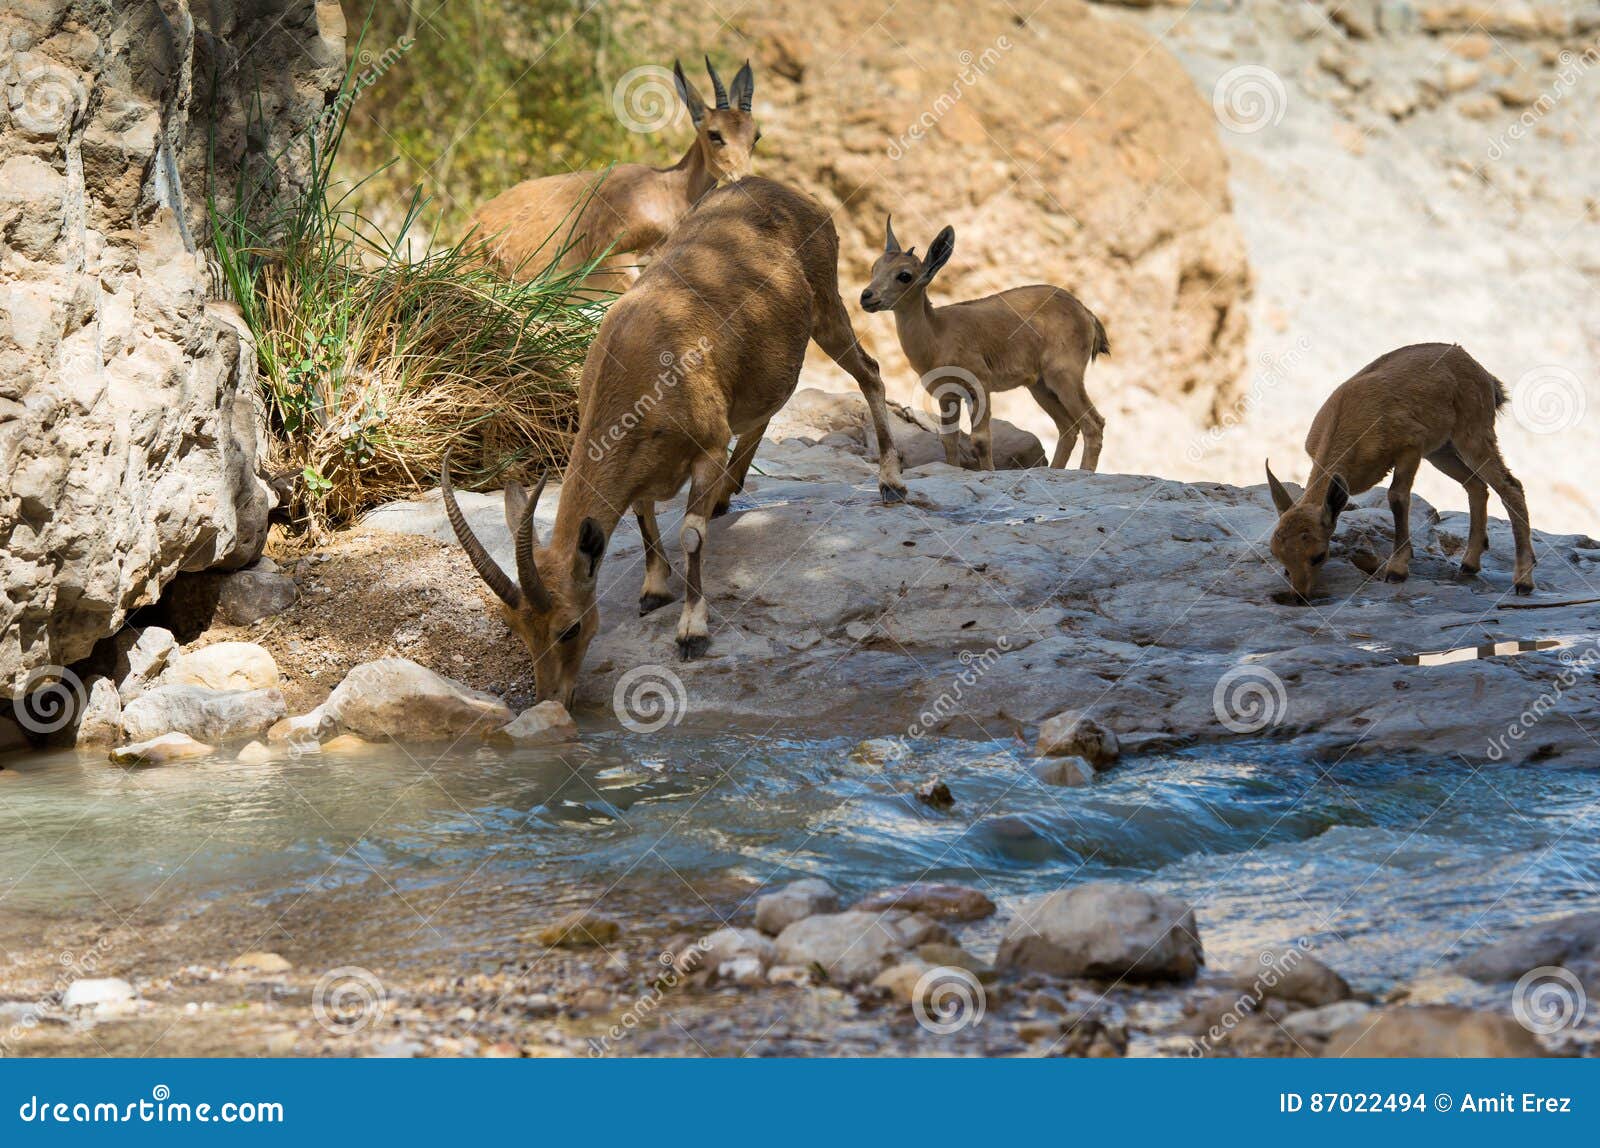 mountain ibex, ein gedi oasis, israel